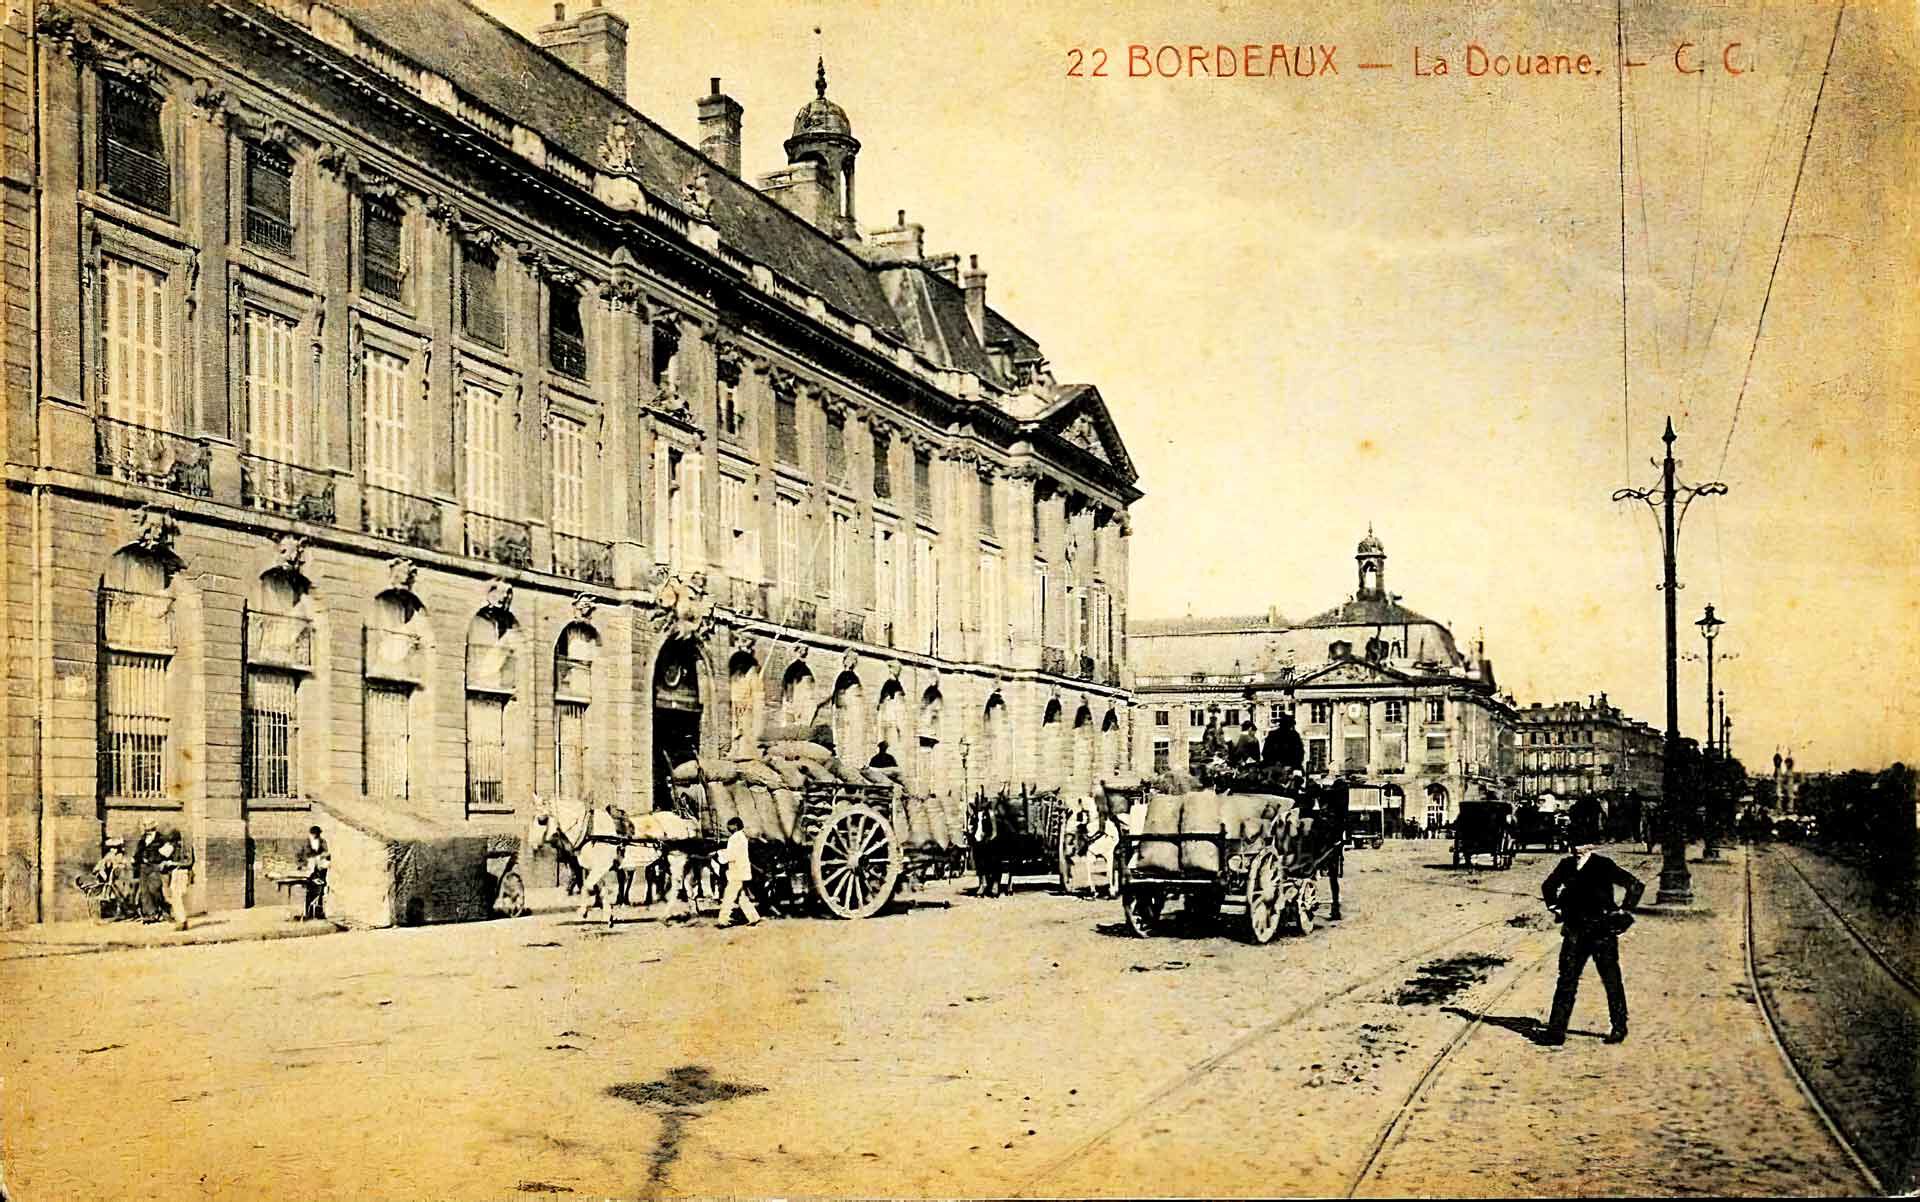 Les rues de Bordeaux alors que les calèches, voitures anciennes et tramways cohabitent, vers la place de la Bourse.